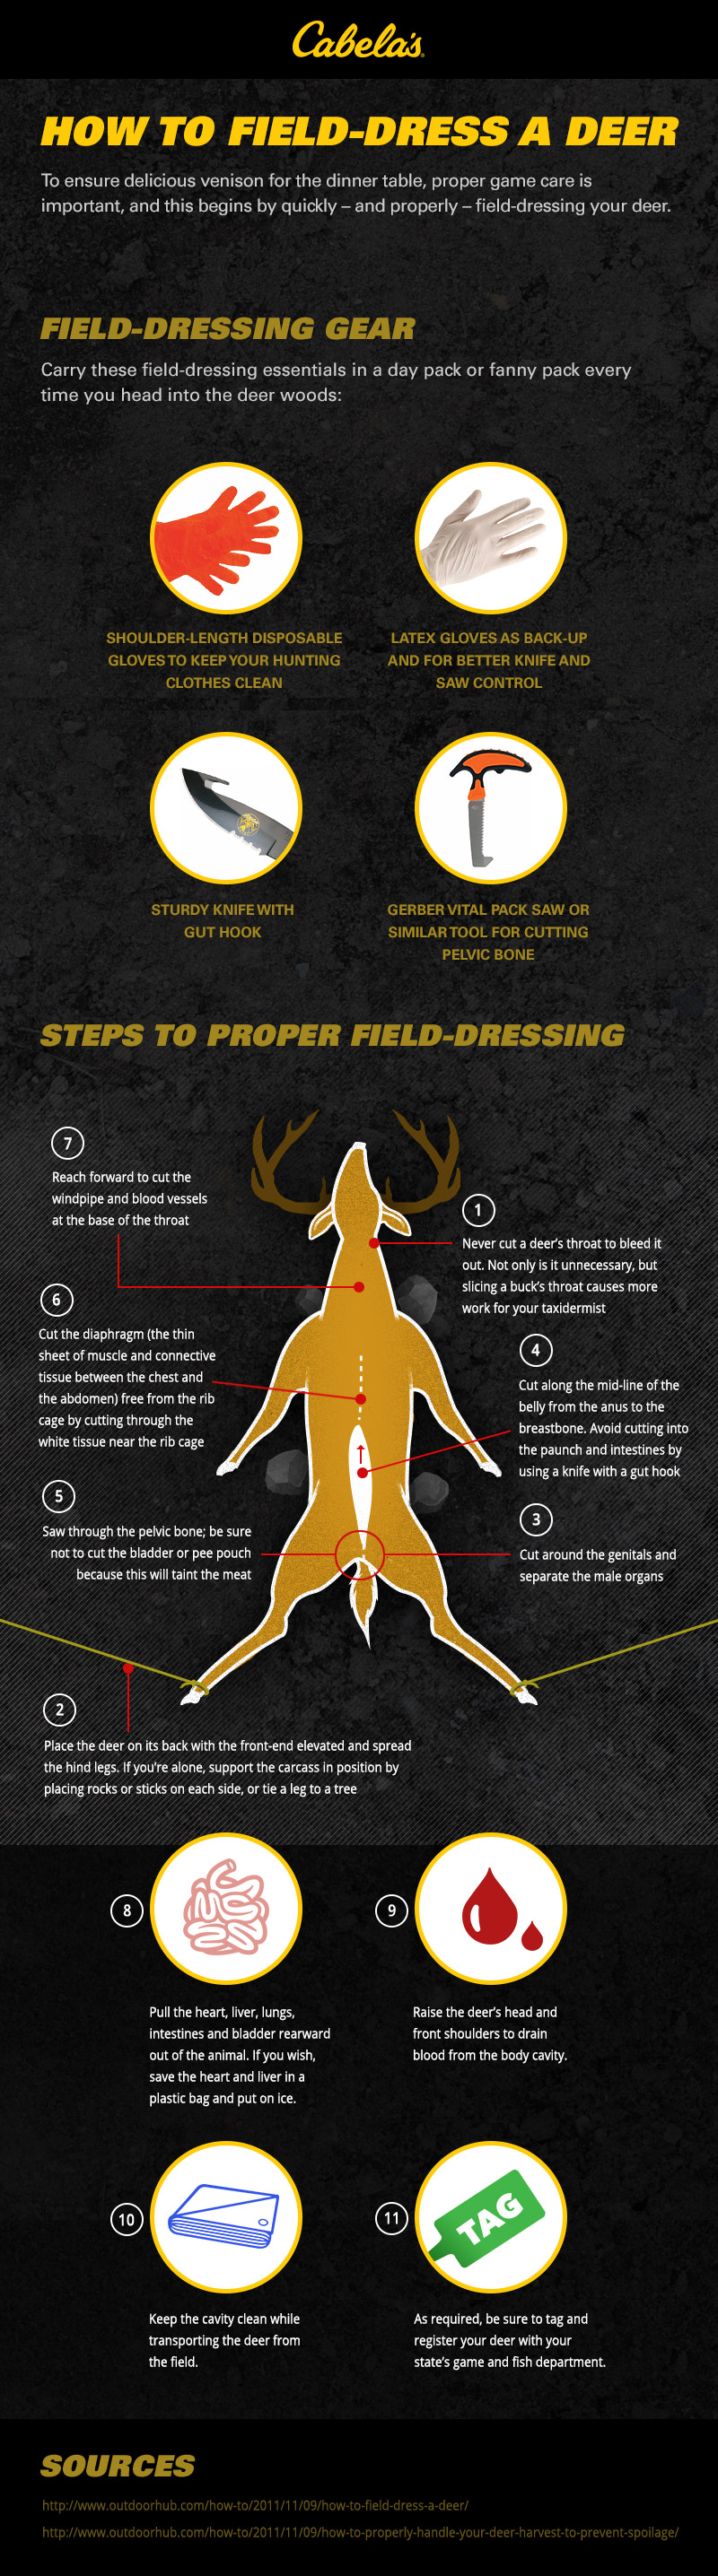 Best Way to Field-Dress a Deer